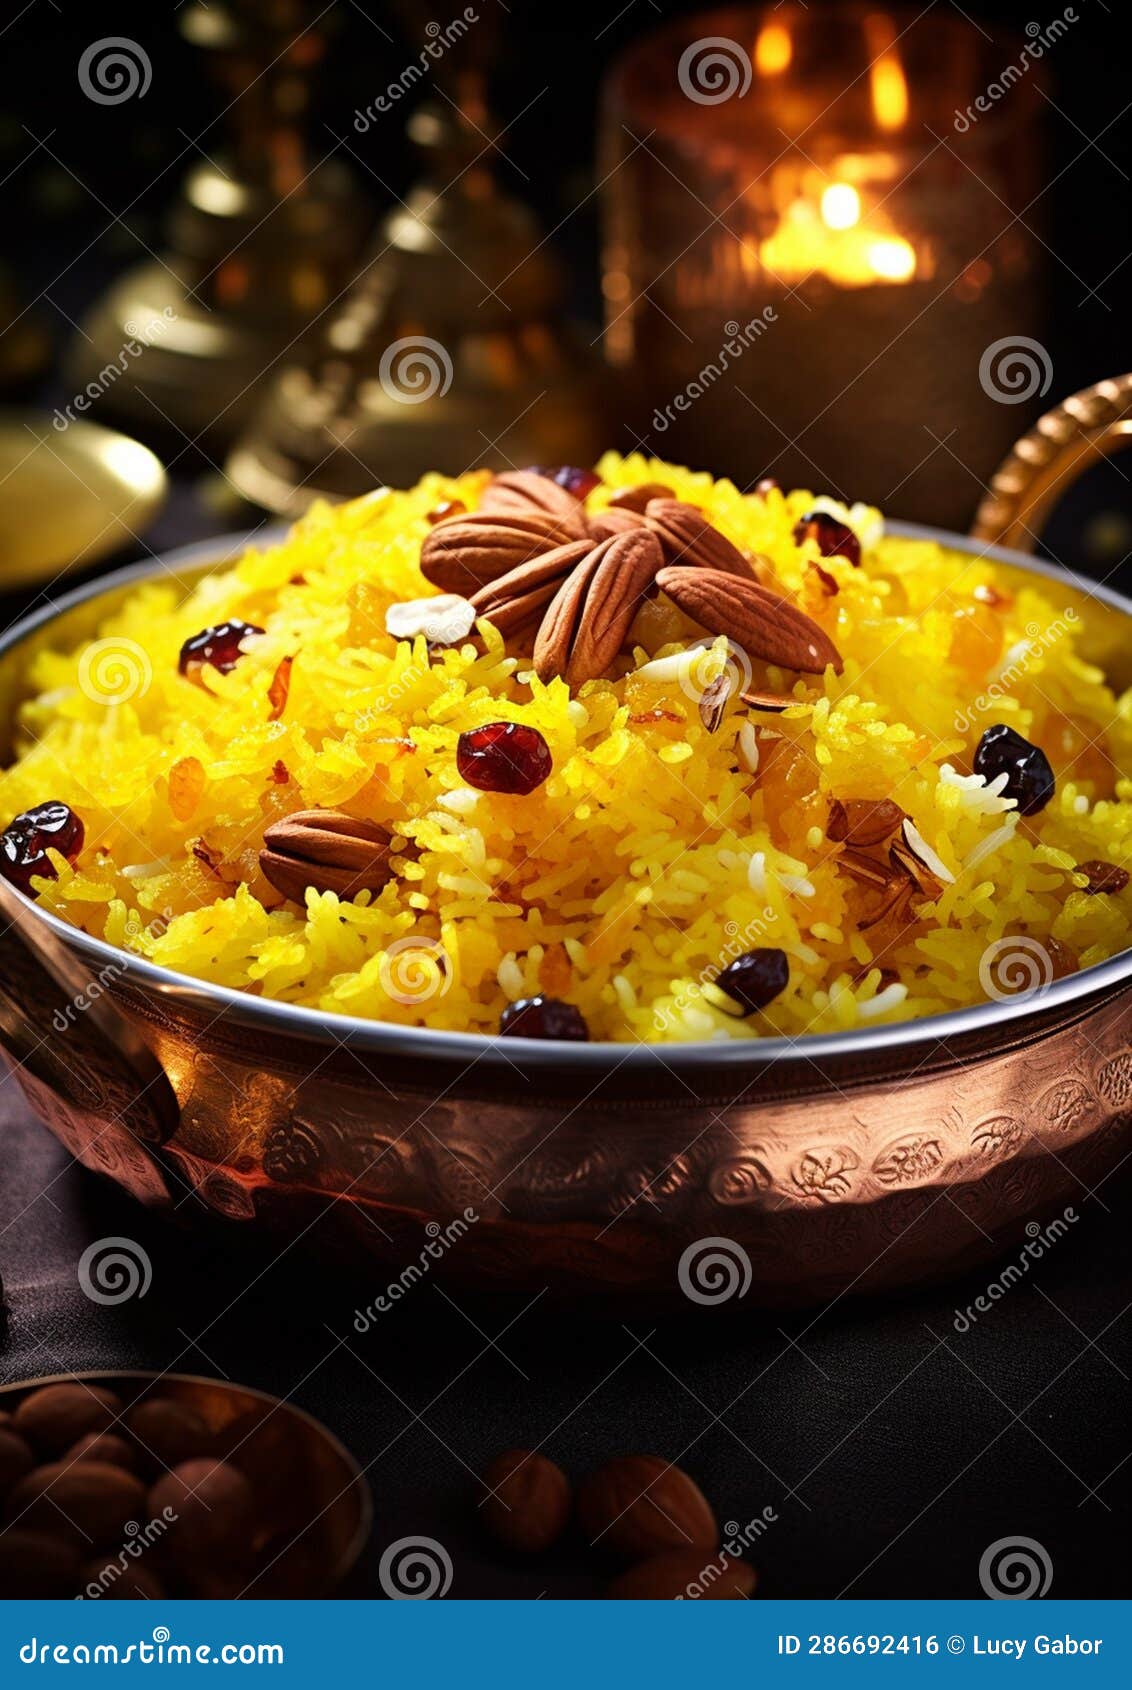 Zarda (Indian Sweet Saffron Rice) Stock Illustration - Illustration of ...